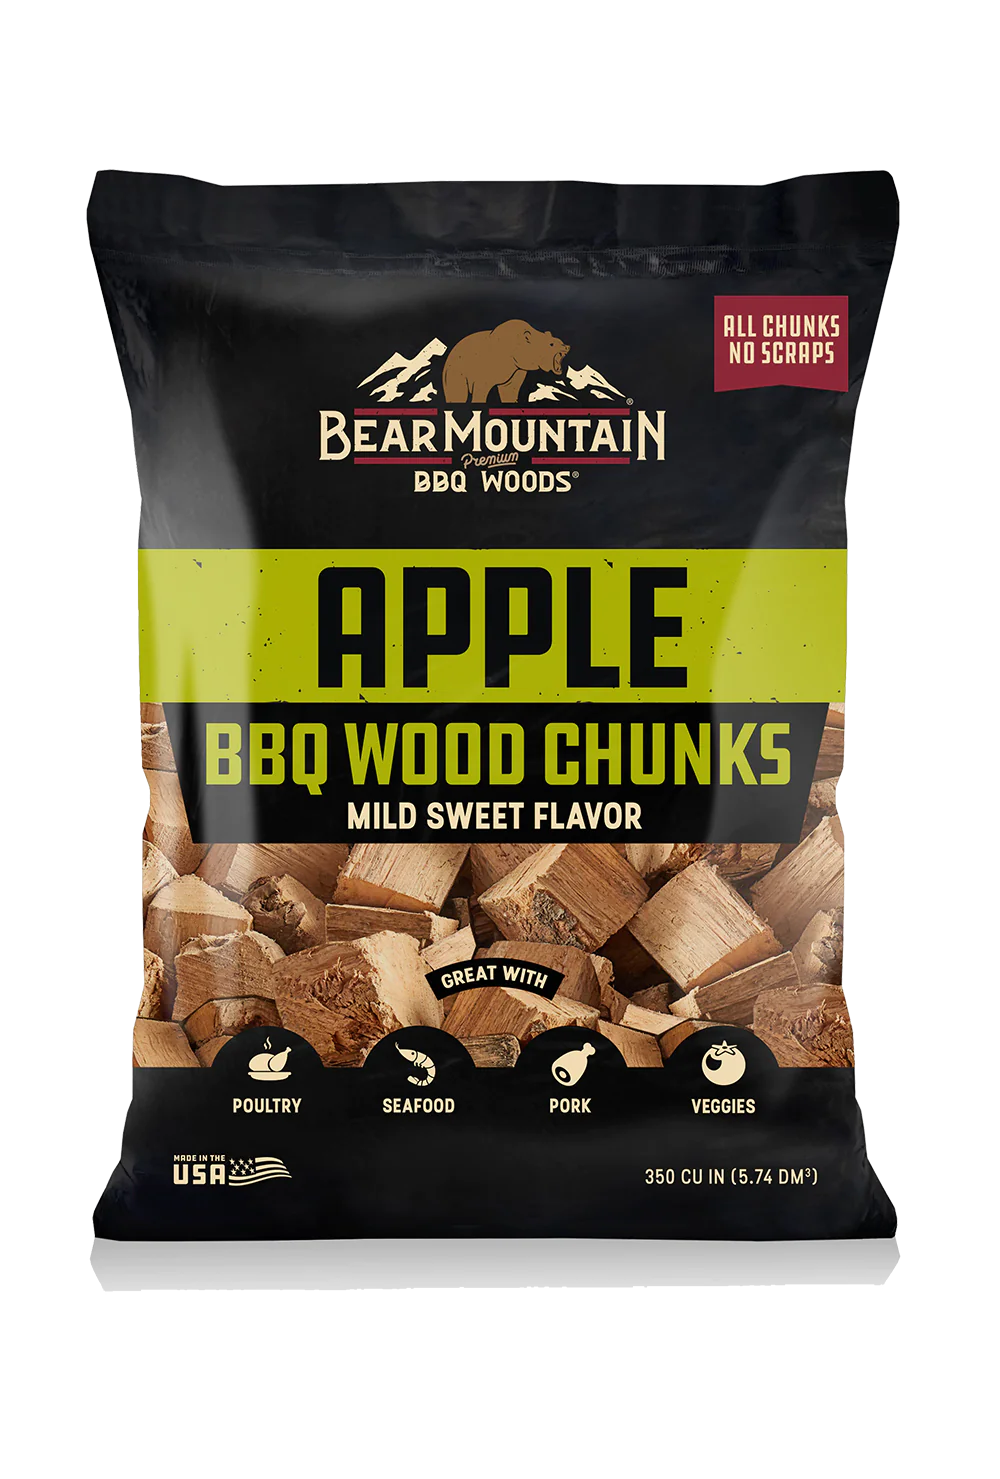 Bear Mountain Apple Wood Chunks - 4lb